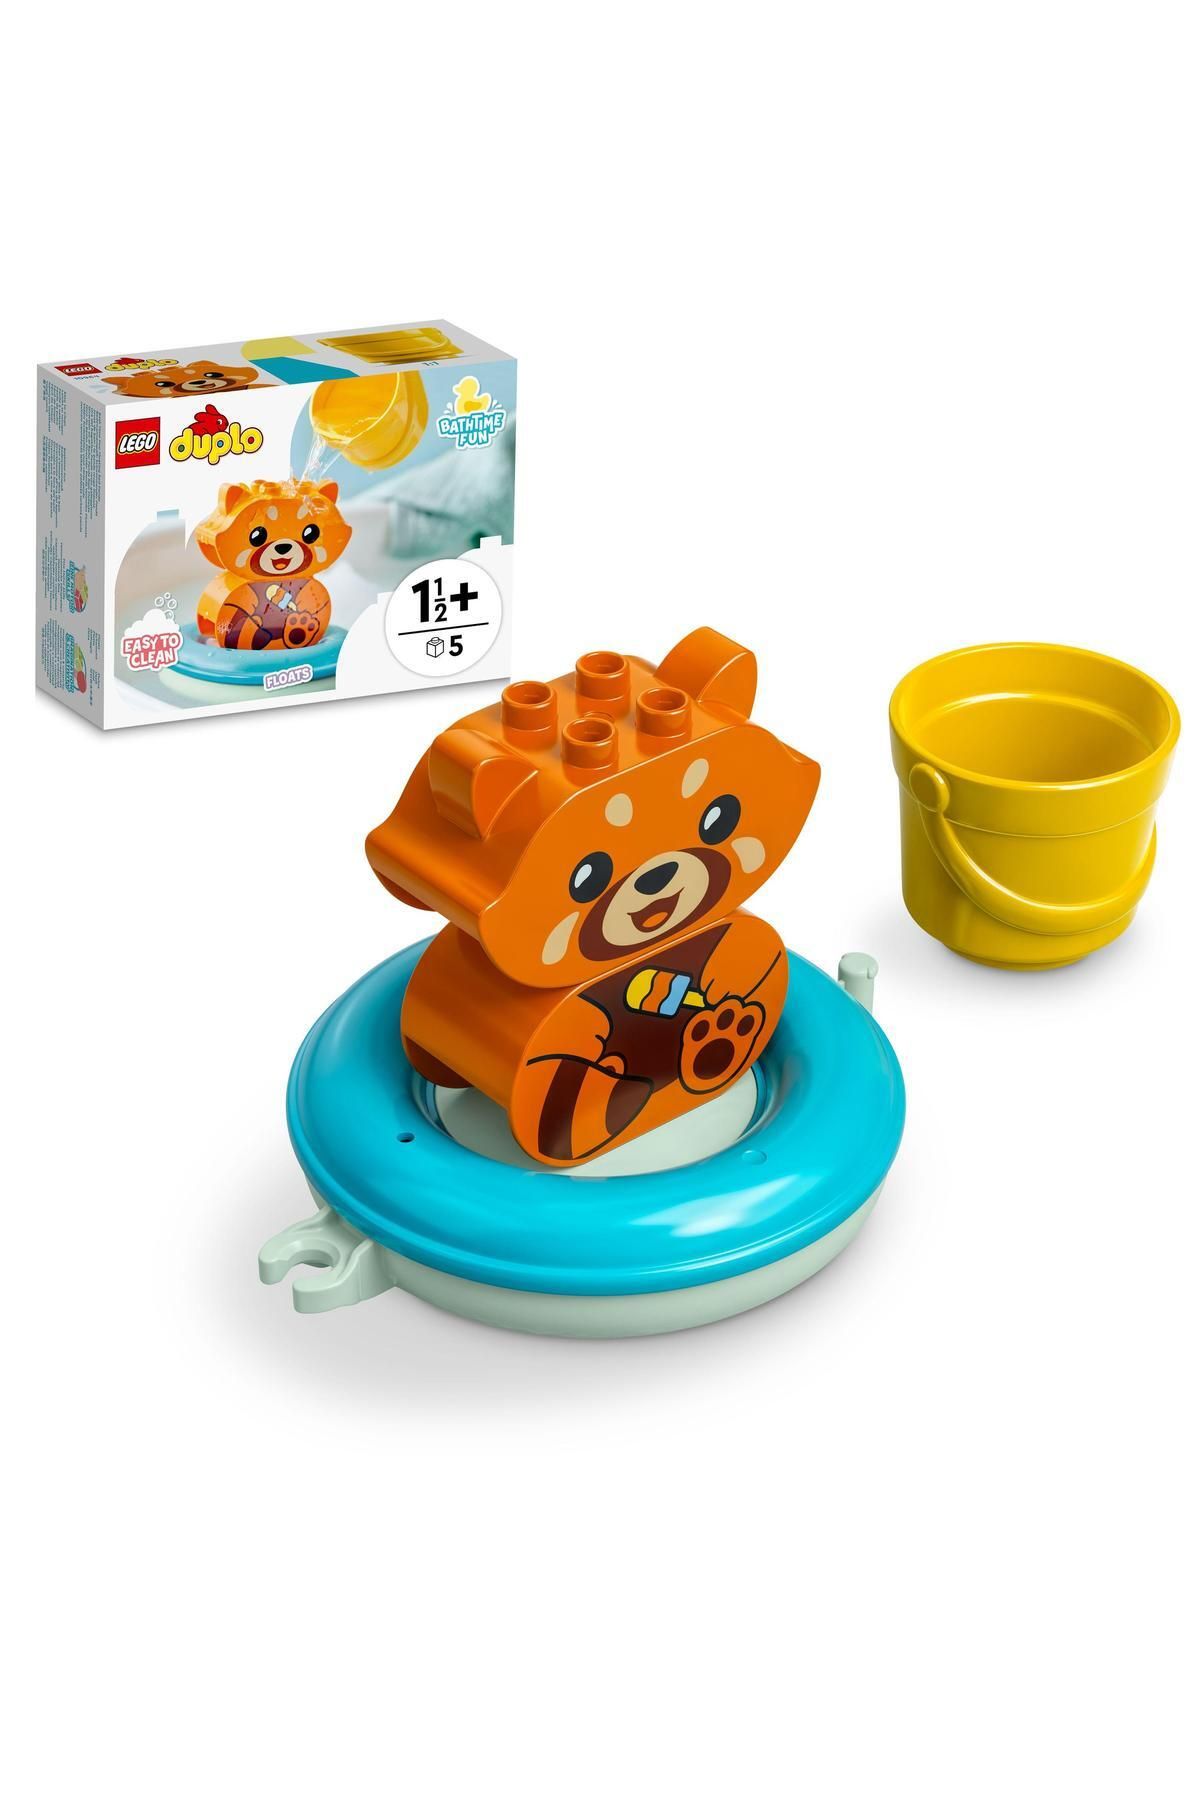 LEGO 10964 ® Duplo® Banyo Zamanı Eğlencesi: Yüzen Kırmızı Panda, 5 Parça, +1,5 Yaş